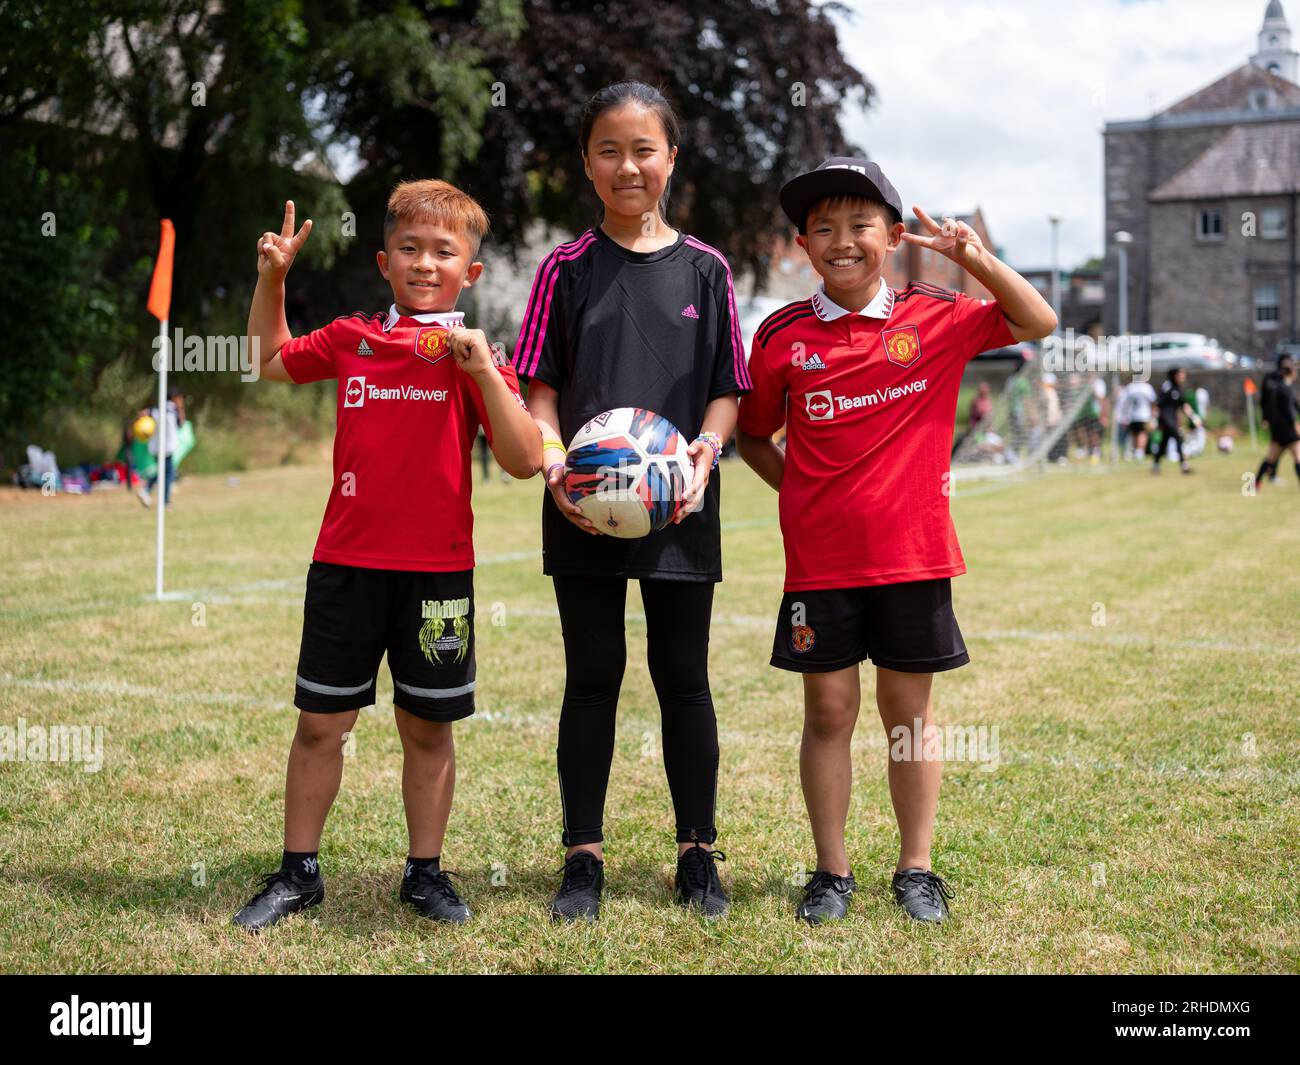 Trois jeunes enfants souriants portant des tenues de football Manchester United. Banque D'Images